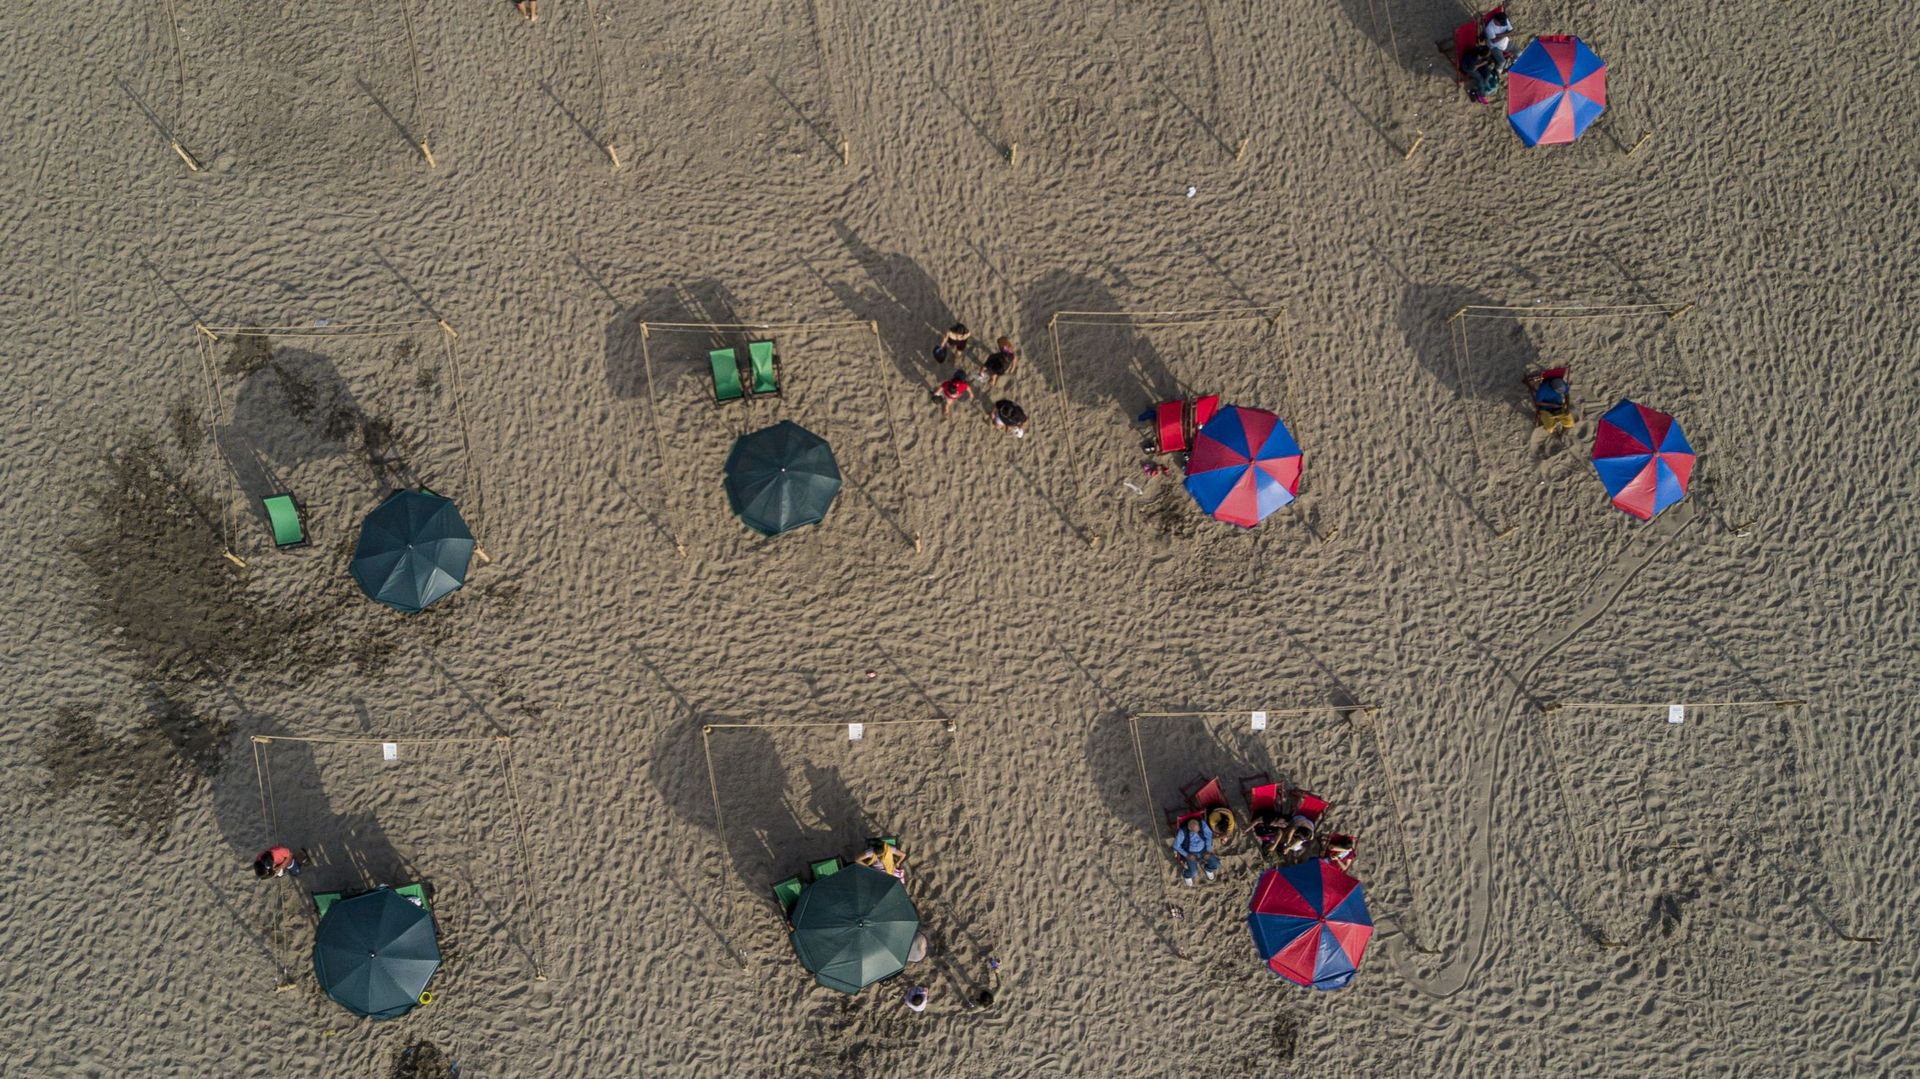 Des personnes prennent un bain de soleil à la plage dans des espaces délimités par des cordons pour éviter les foules dans le cadre de la pandémie de nouveau coronavirus COVID-19 à Lima, le 21 décembre 2021.